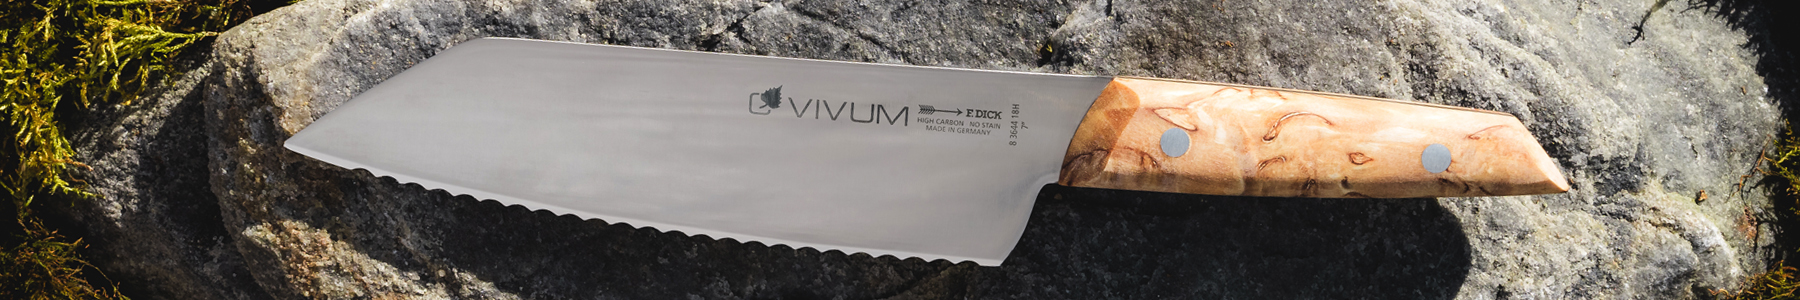 FDick vivum series utility knife